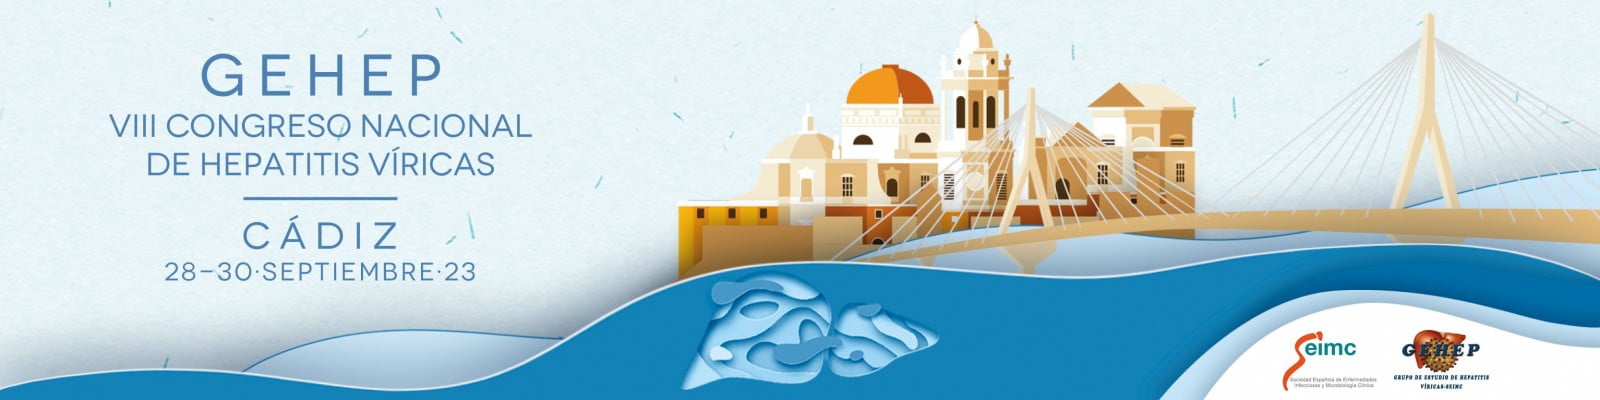 Cádiz acoge desde este jueves el VIII Congreso Nacional de Hepatitis Víricas